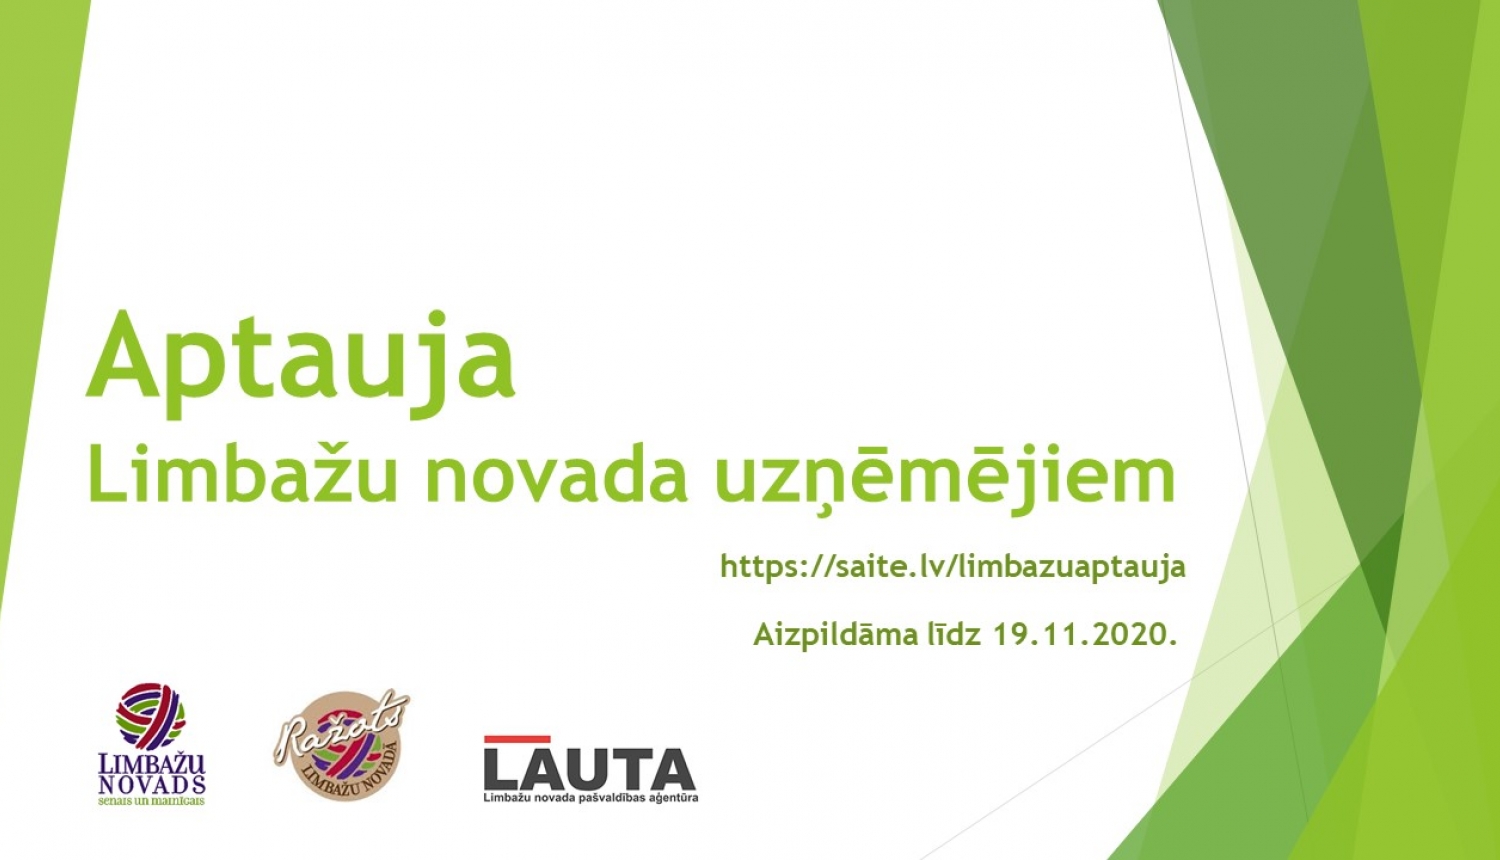 Limbažu novada pašvaldības aģentūra "LAUTA" aicina uzņēmējus aizpildīt anketu par uzņēmējdarbības vidi Limbažu novadā